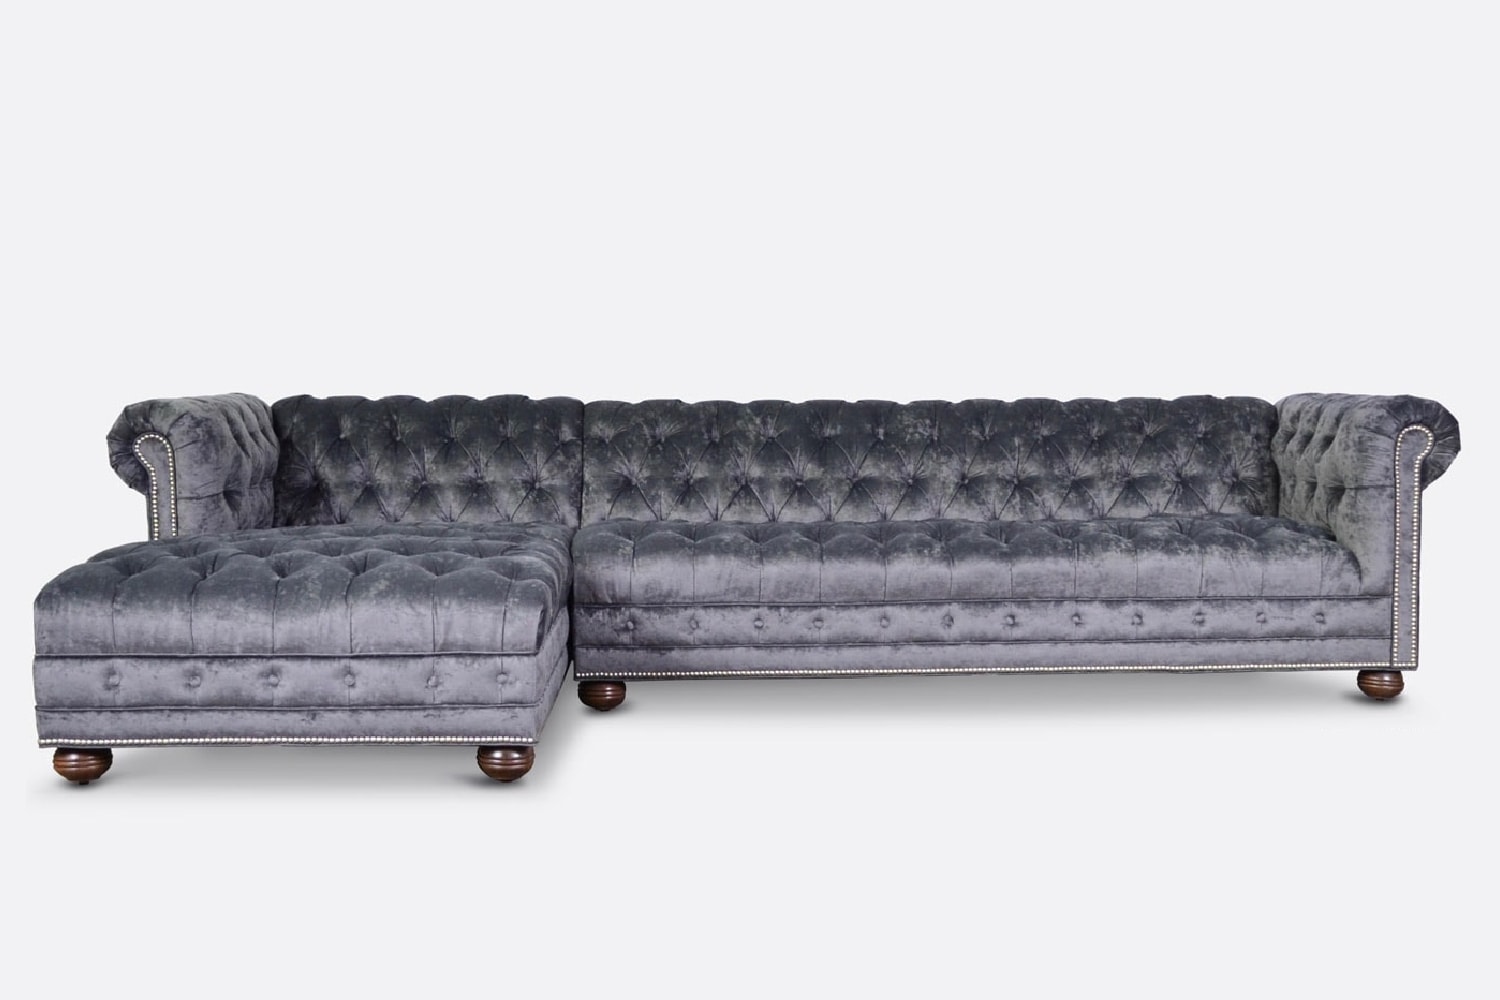 Hepburn Tufted Chesterfield Three Cushion Sofa in Gramercy Windsor Velvet